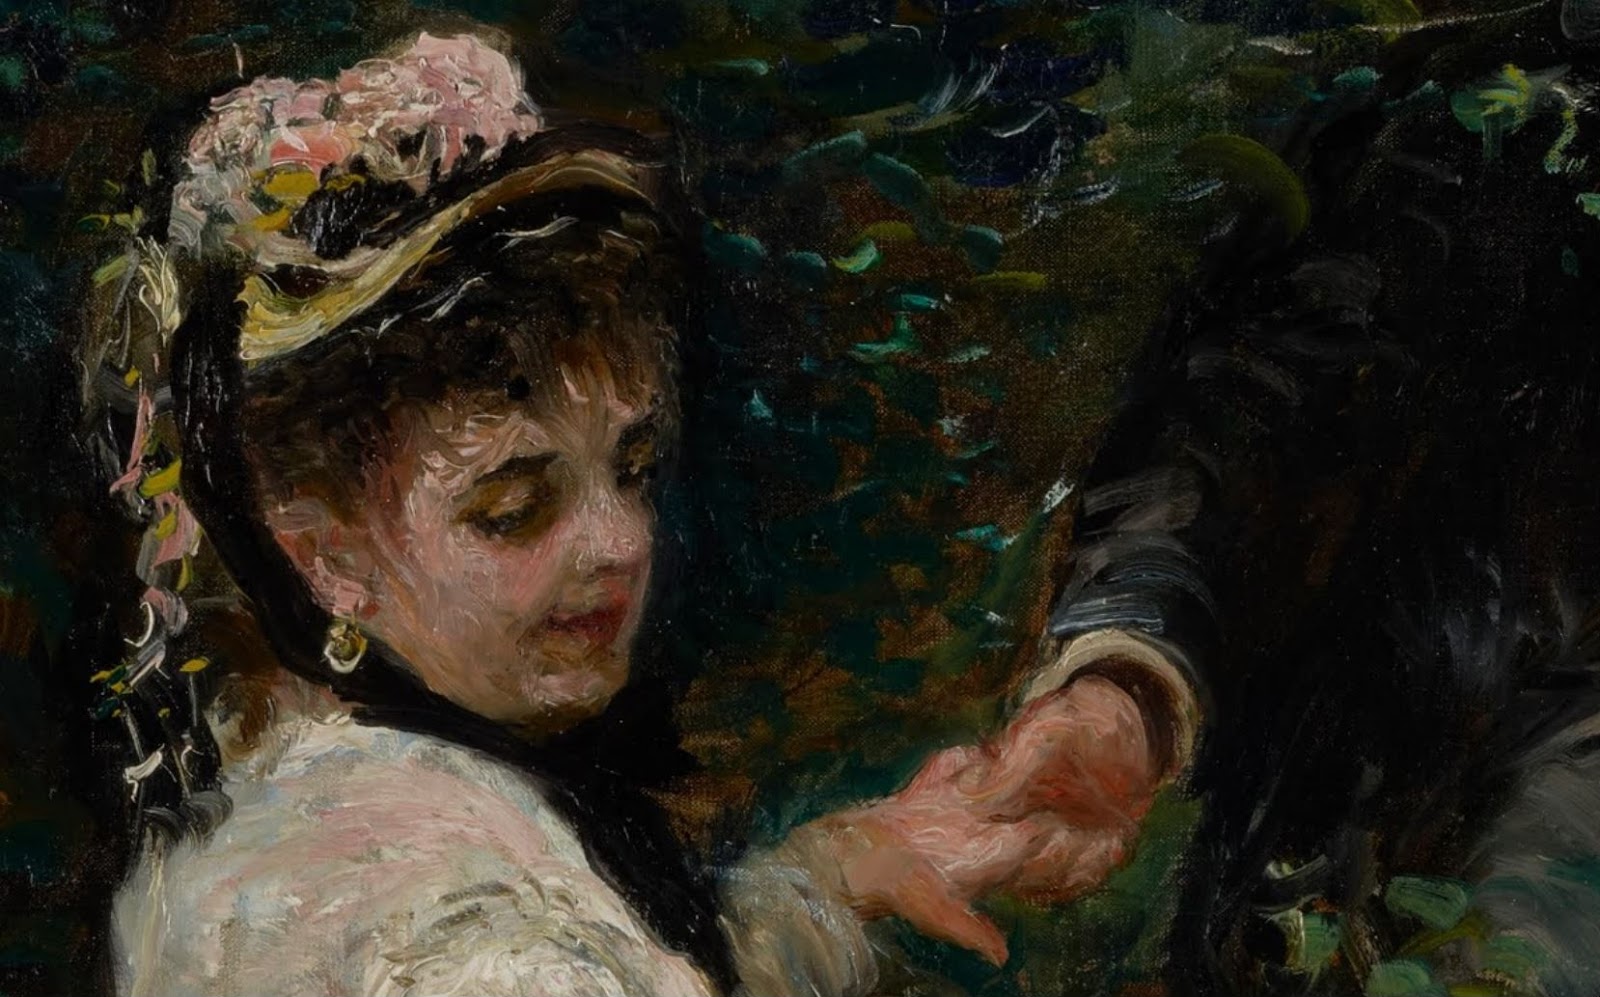 Pierre+Auguste+Renoir-1841-1-19 (272).JPG